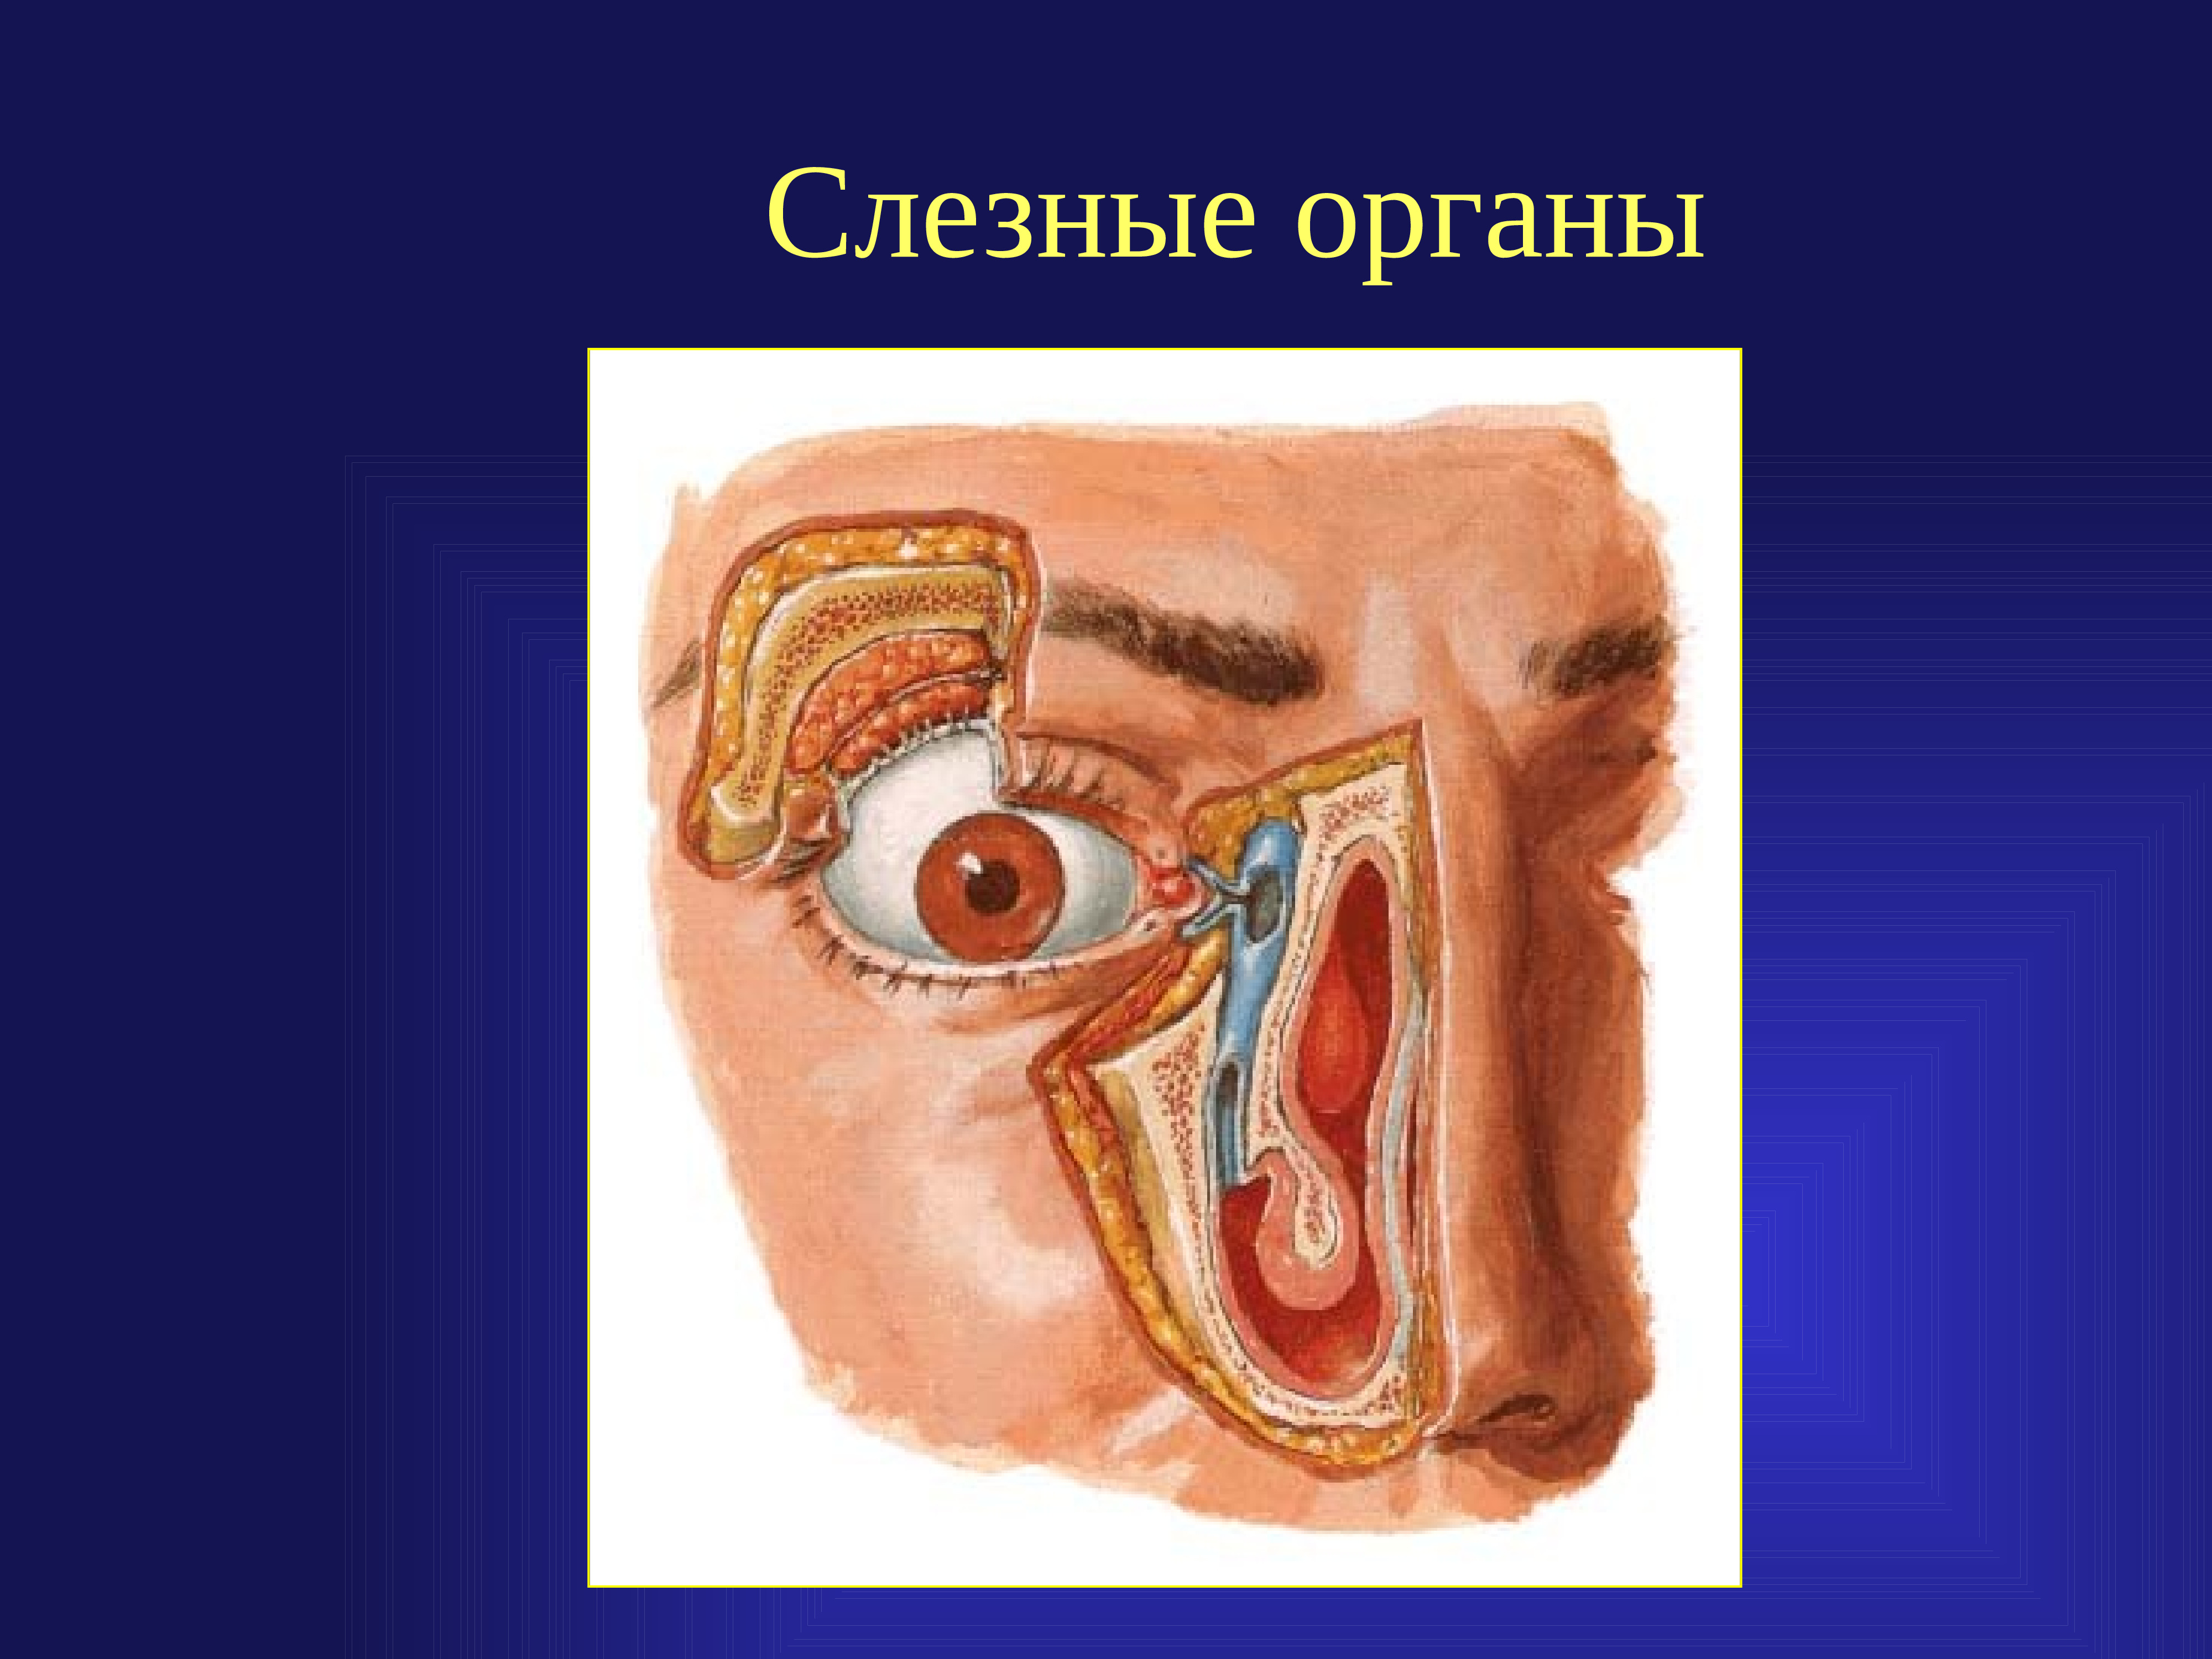 Строение слезной железы. Анатомия слезных органов. Строение слезных органов.